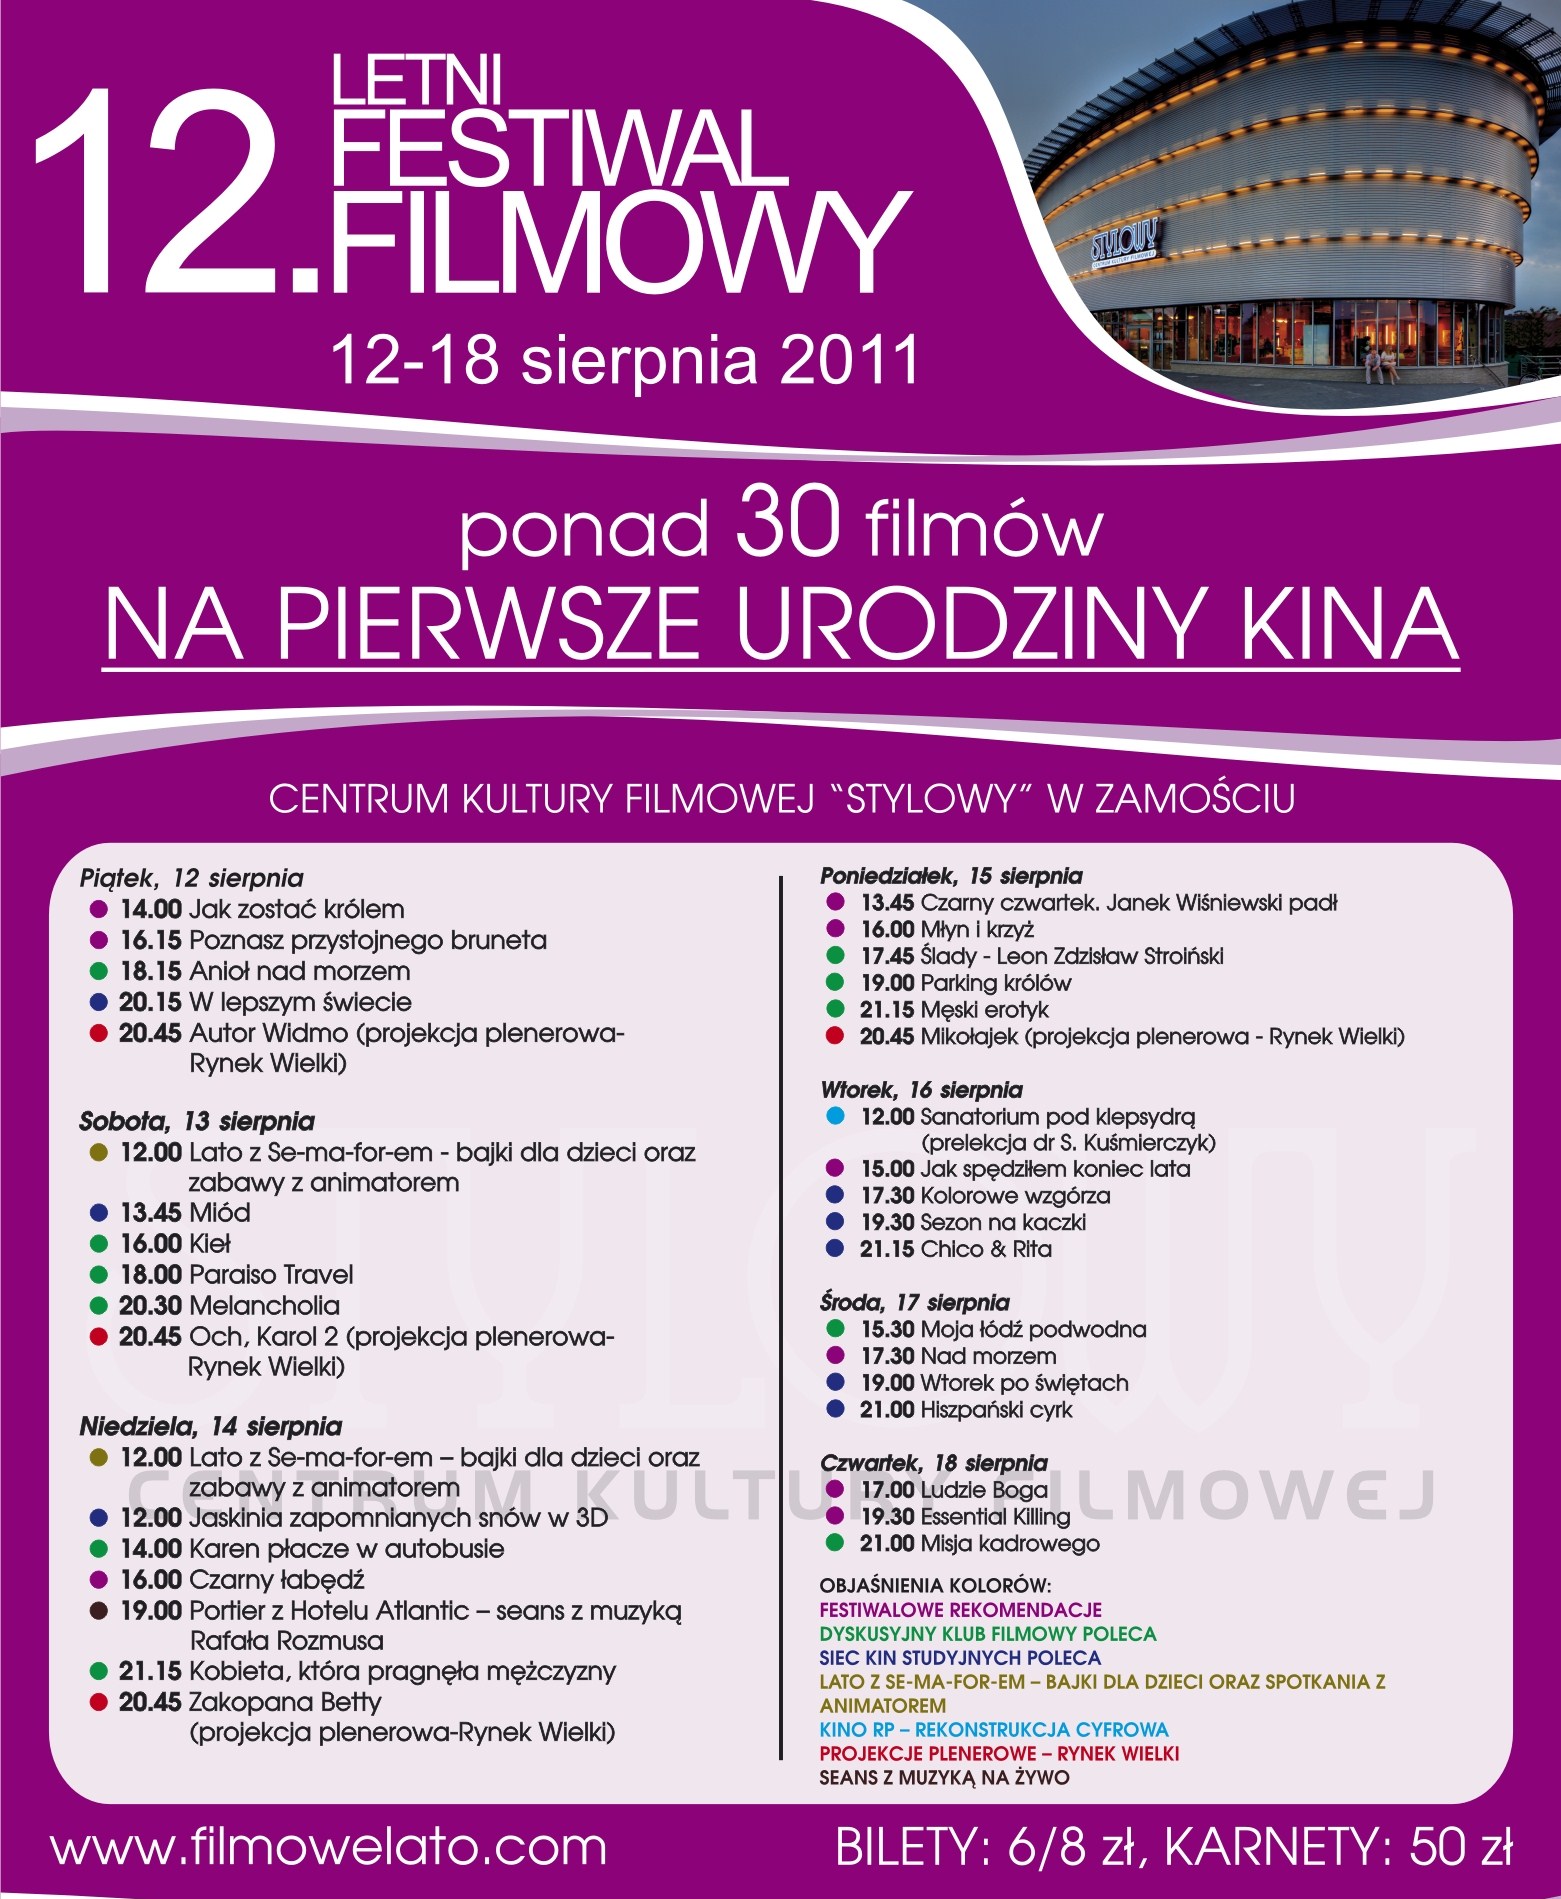 Plakat XII letniego Festiwalu Filmowego (plakat pochodzi z materiałów udostępnionych przez organizatora)